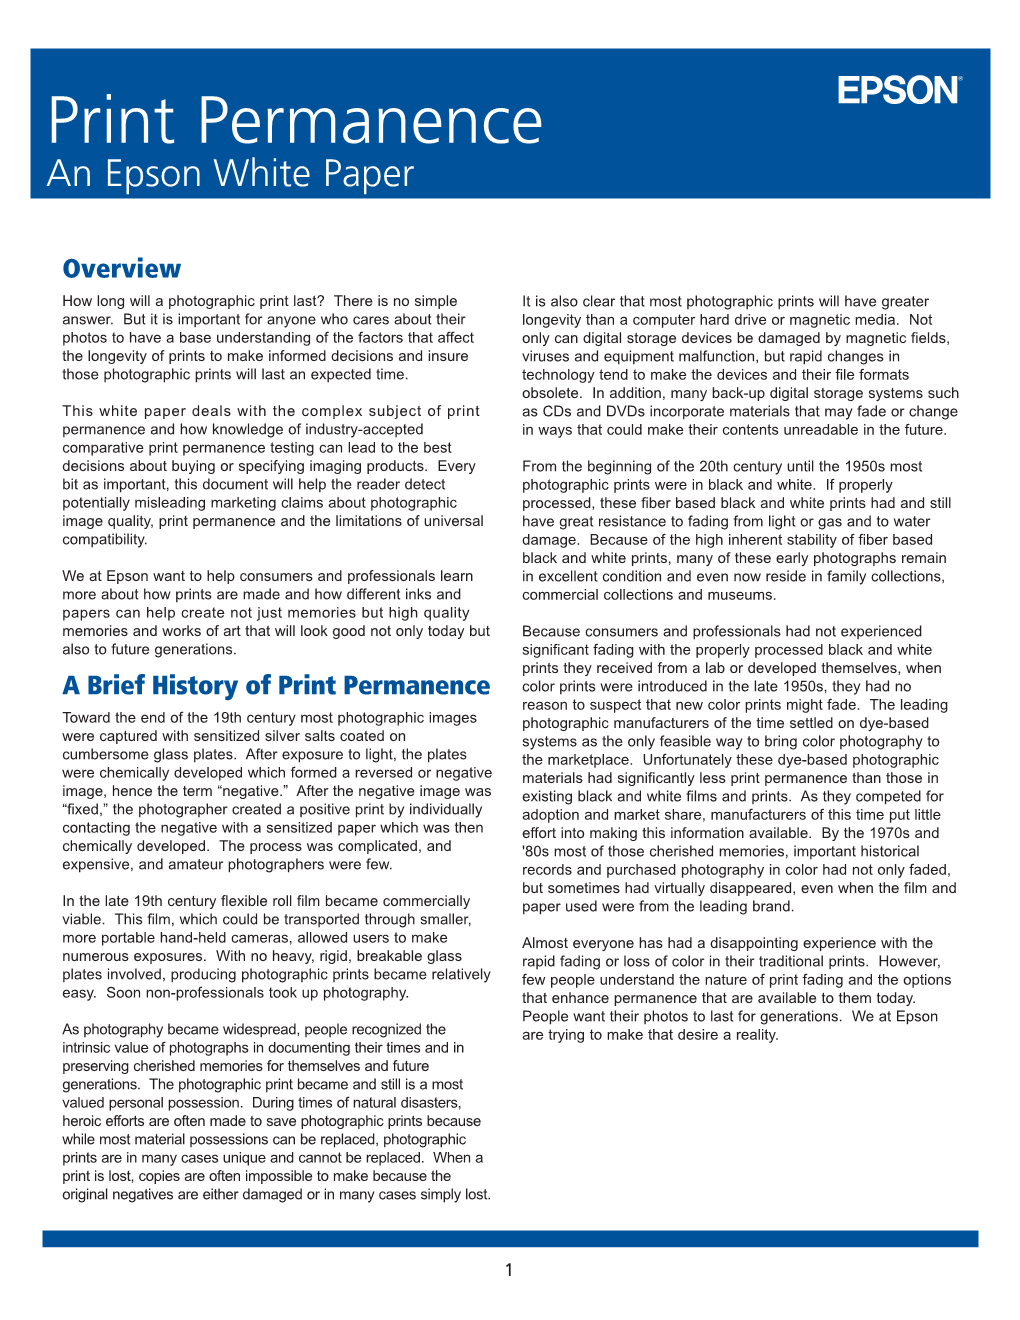 Print Permanence an Epson White Paper